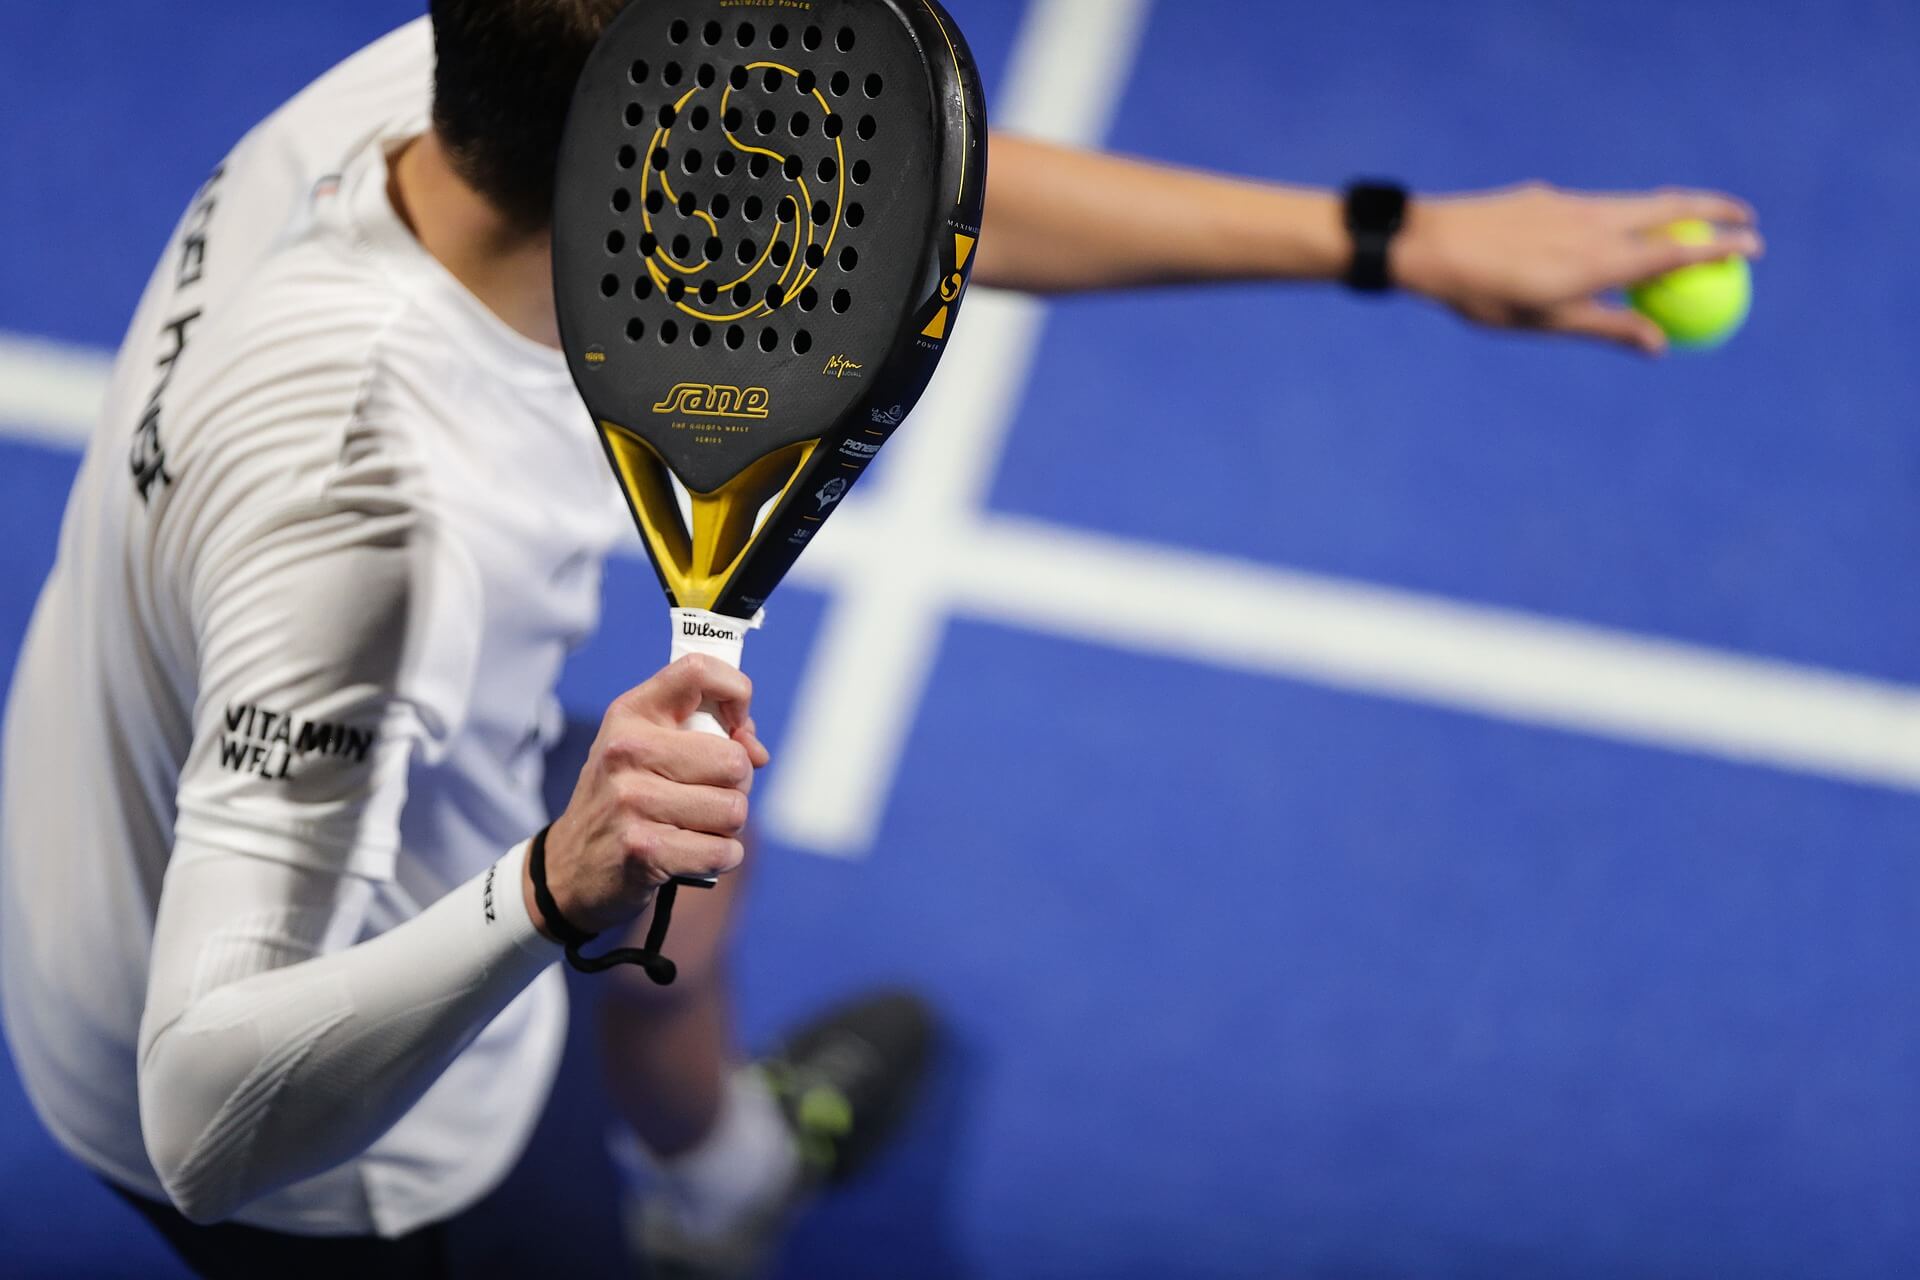 Tecnologia do tênis: como ela evoluiu ao longo dos anos?